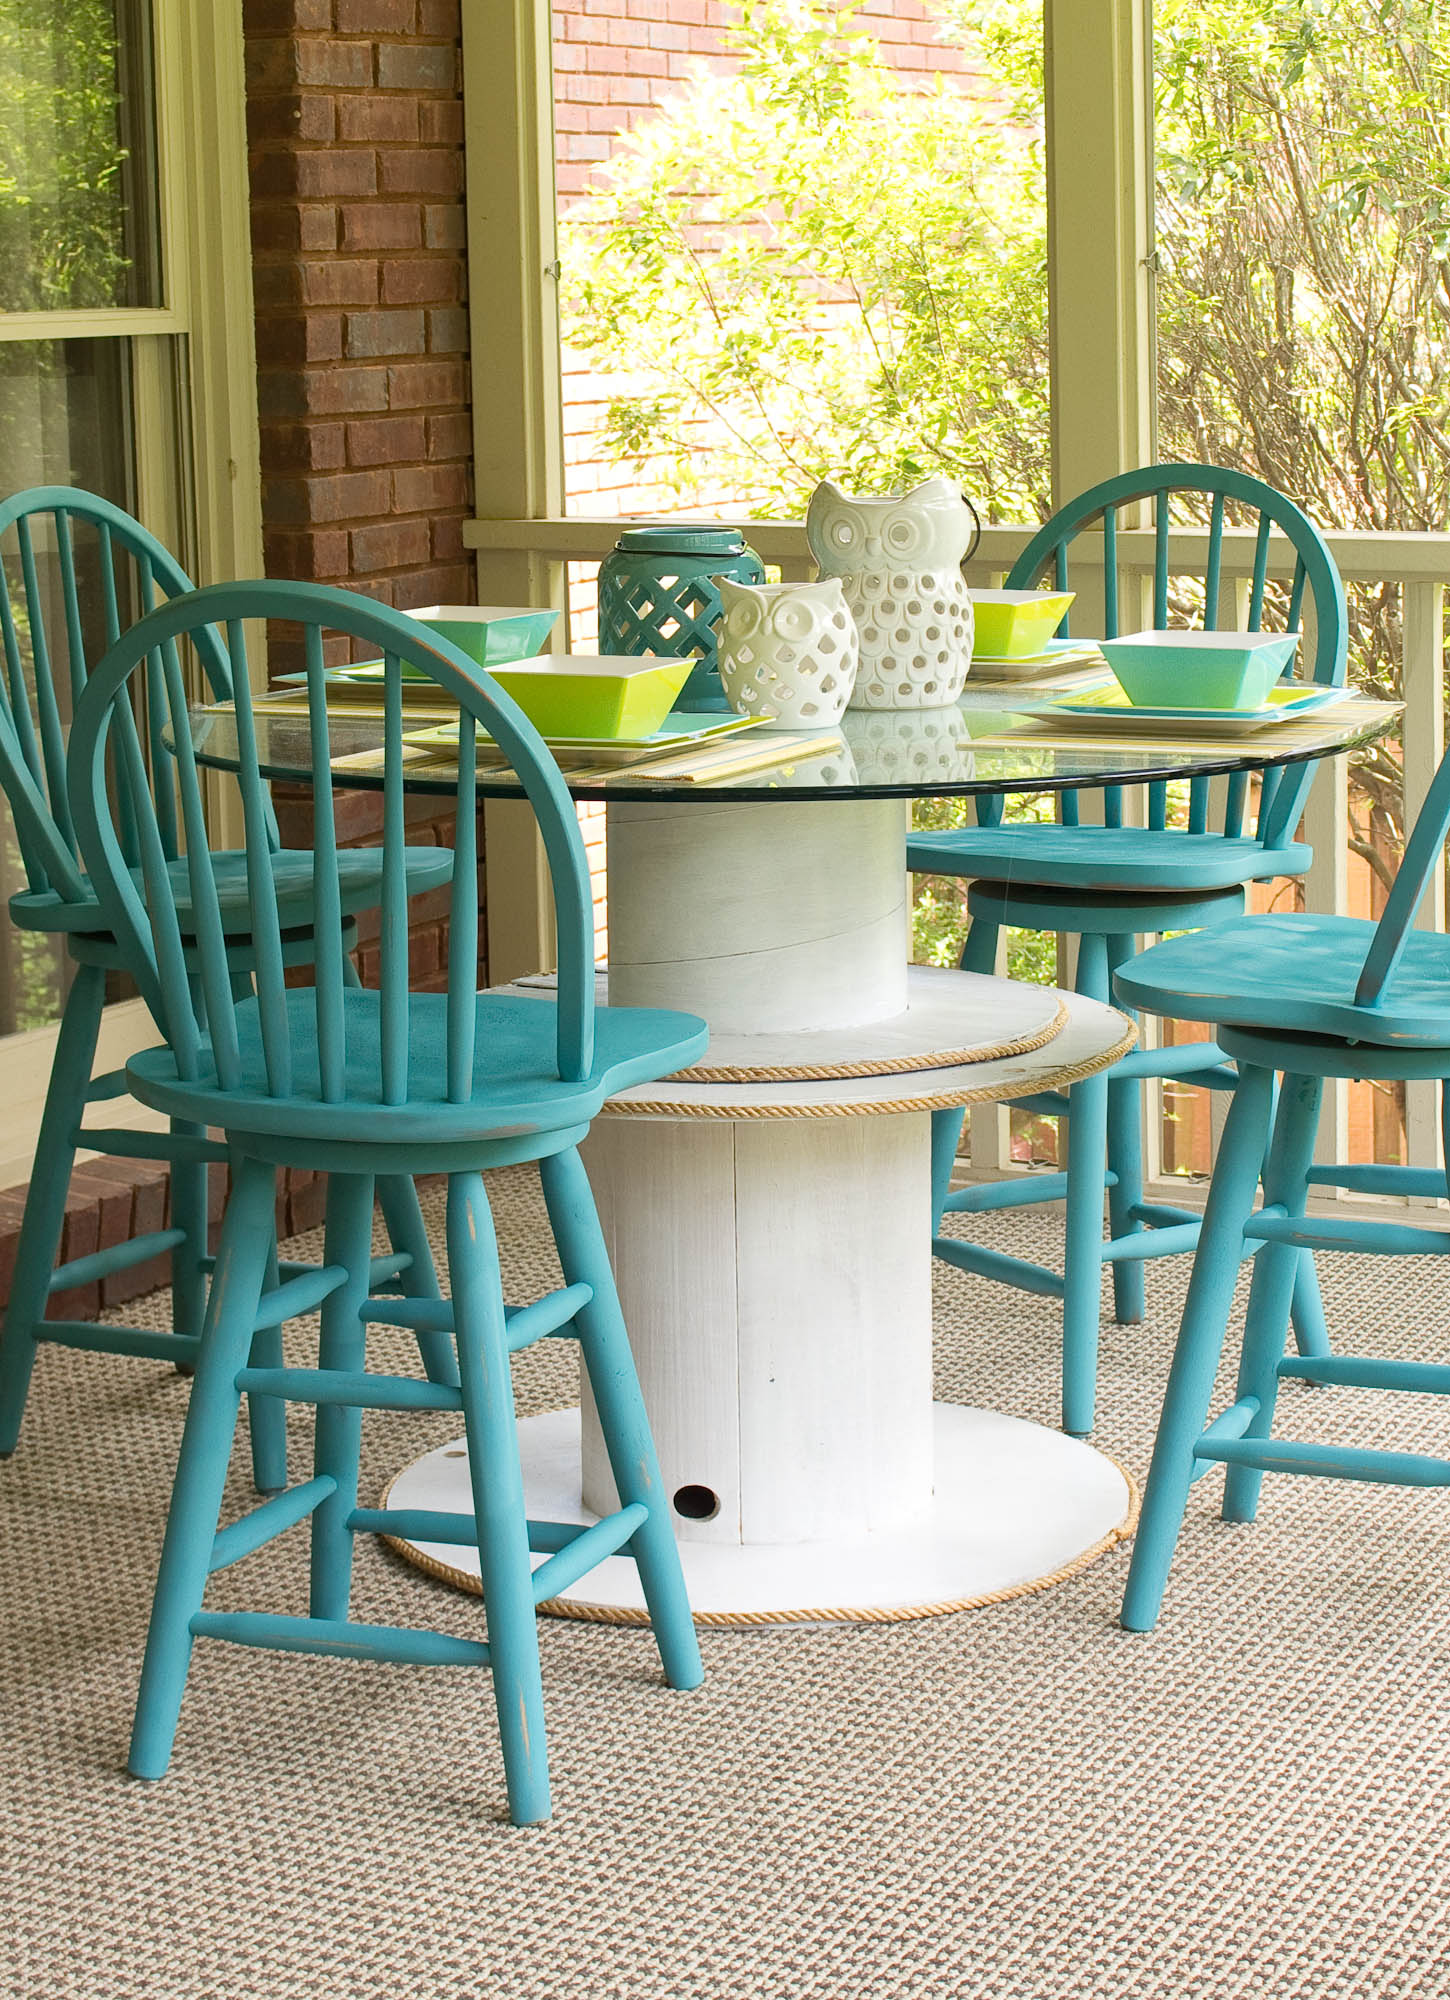 table en touret blanche avec un plateau en verre, chaises en bois bleus, tapis gris, amenagement terrasse